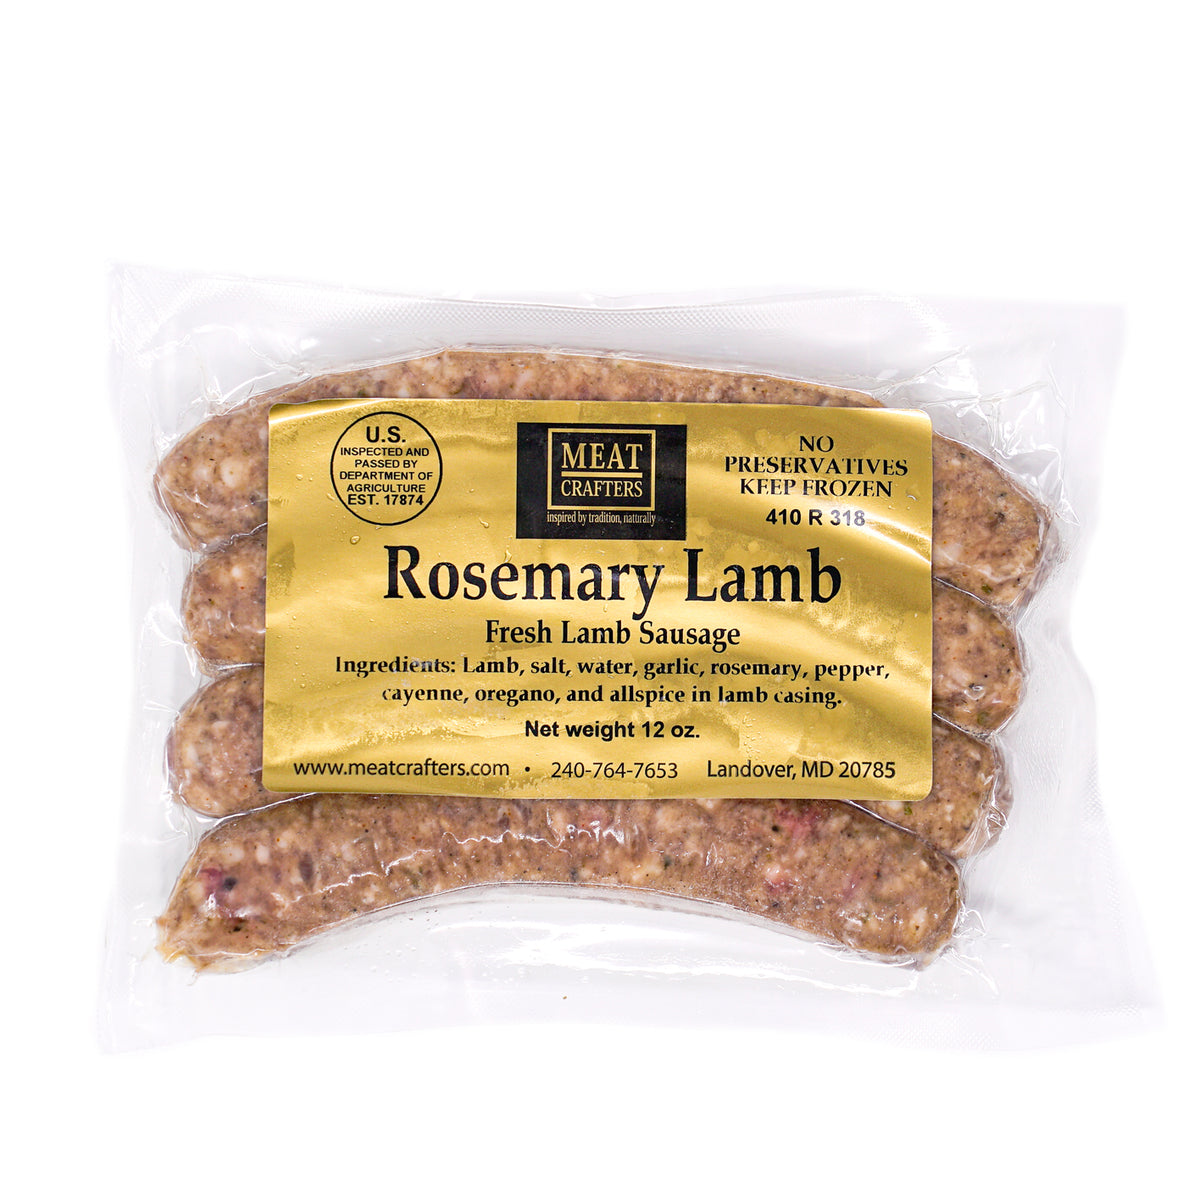 Rosemary Lamb